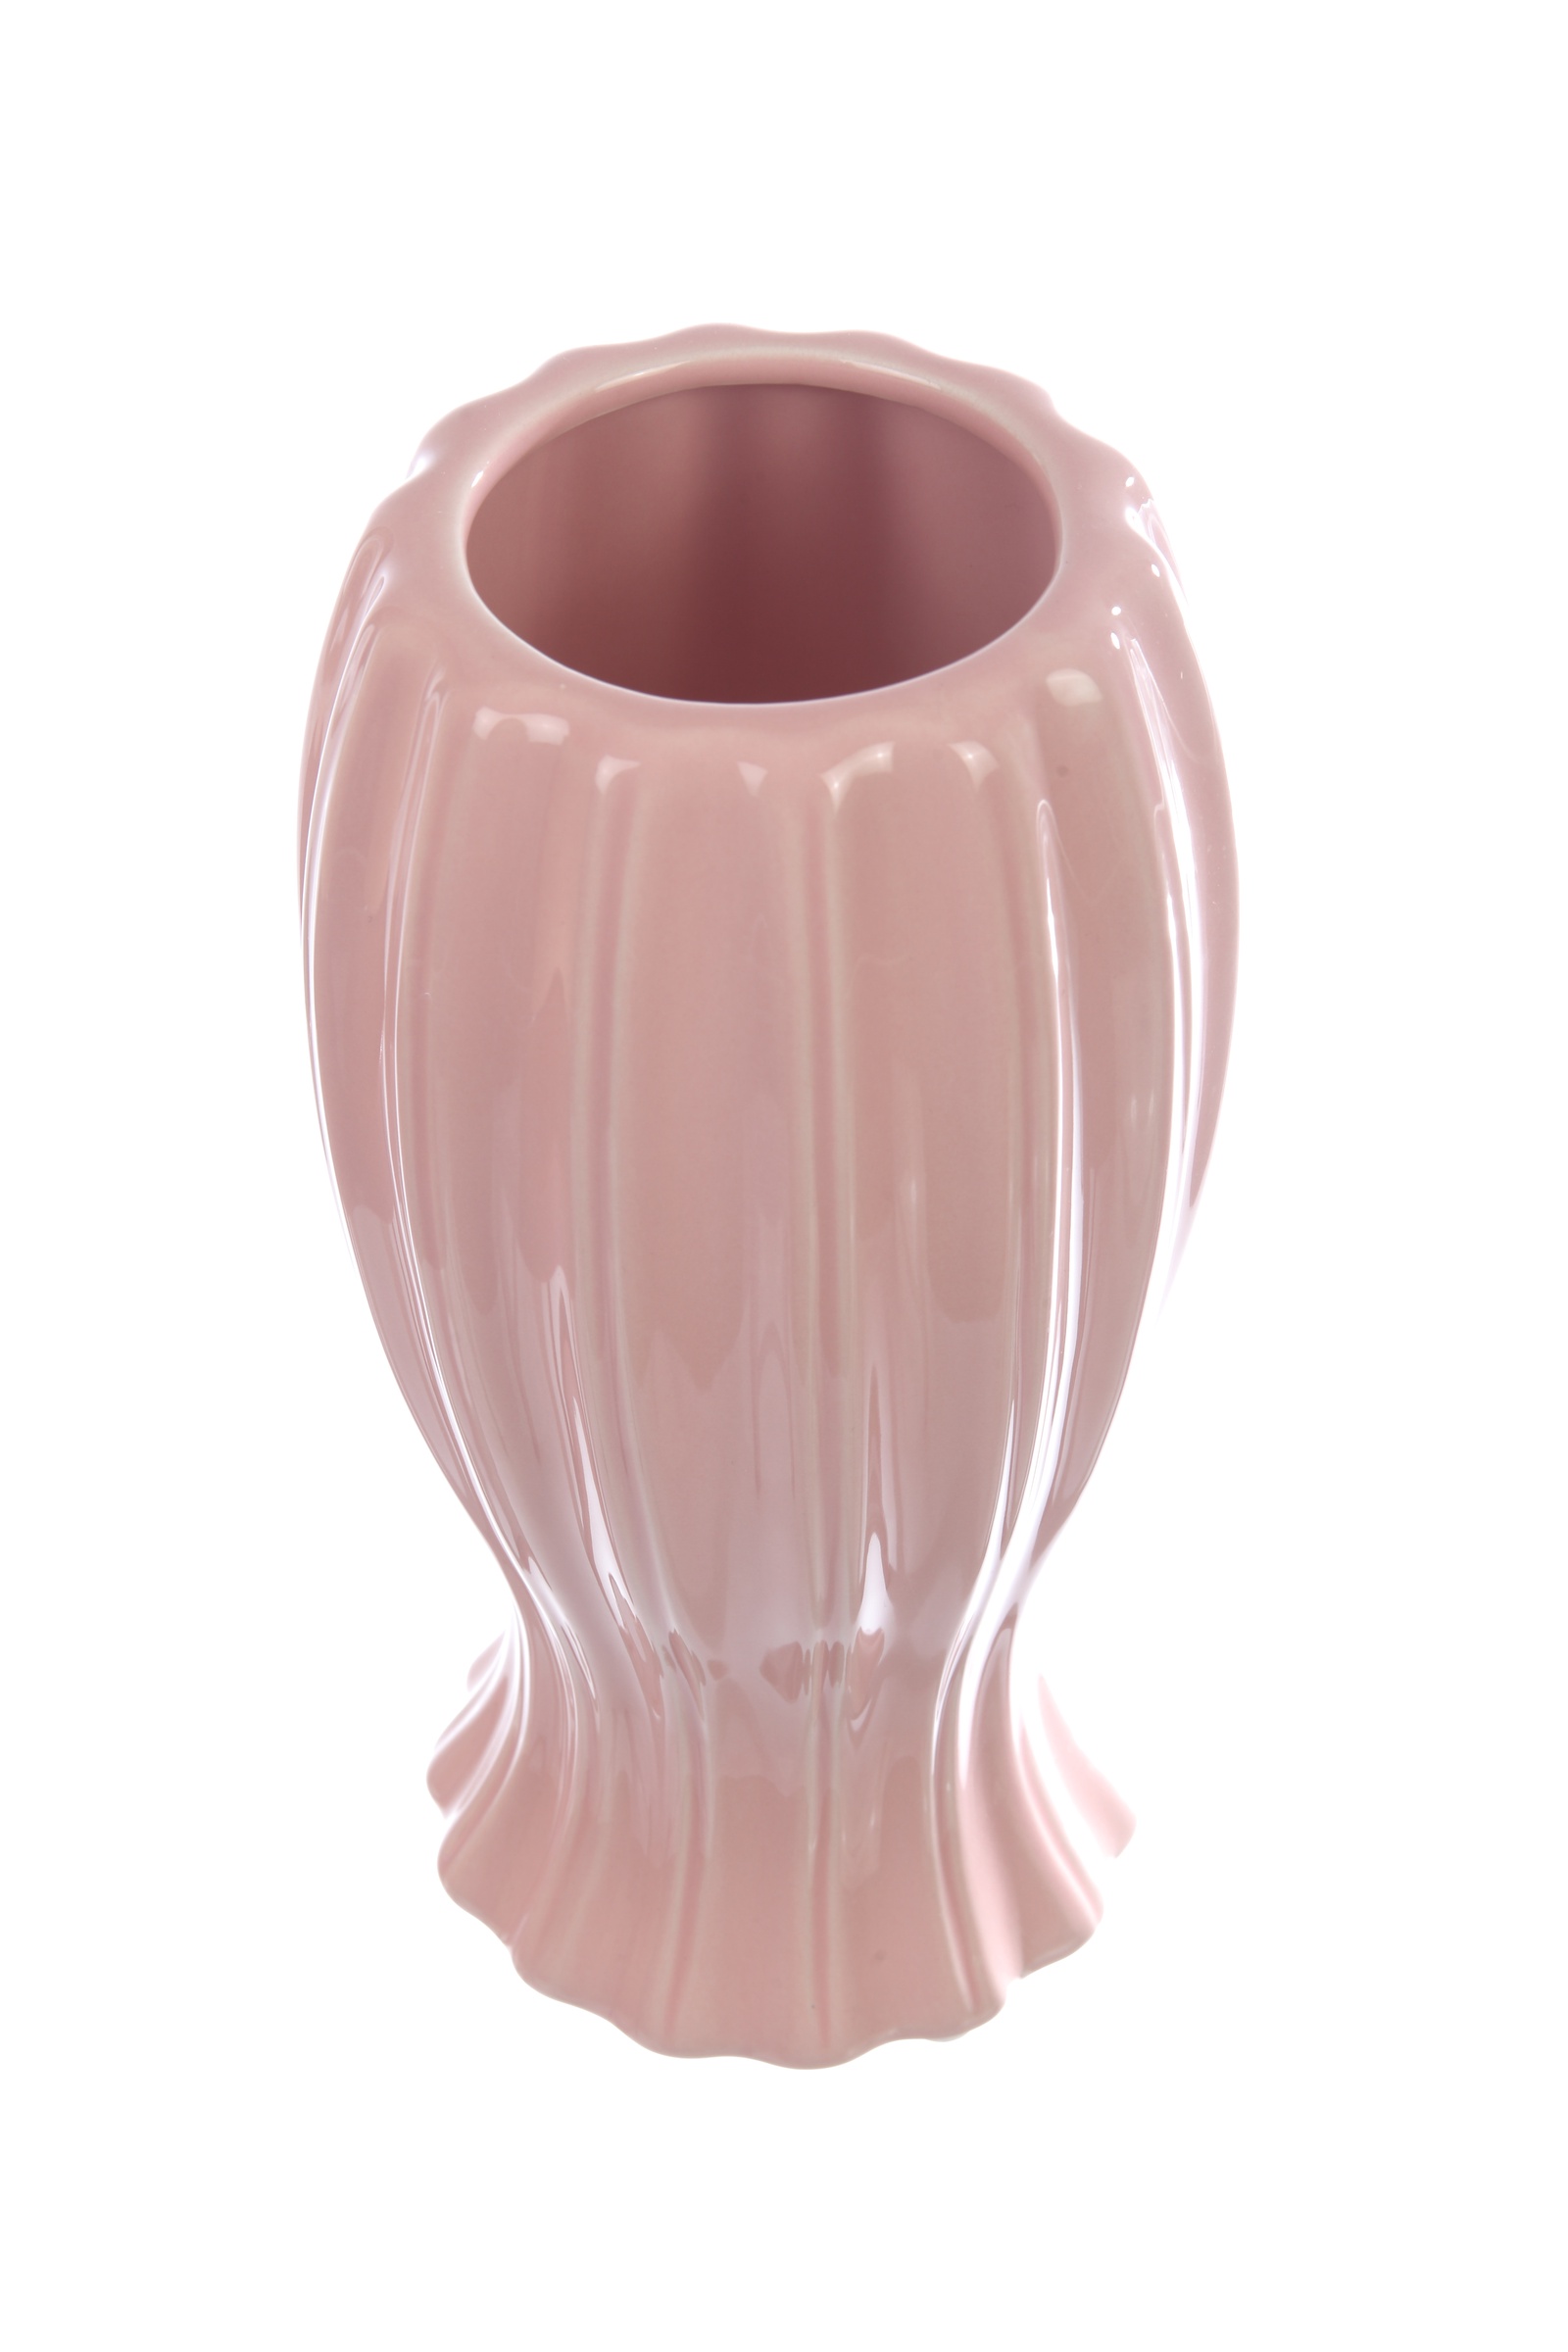 фото Декоративная керамическая ваза, VM-34 розовый Ismatdecor